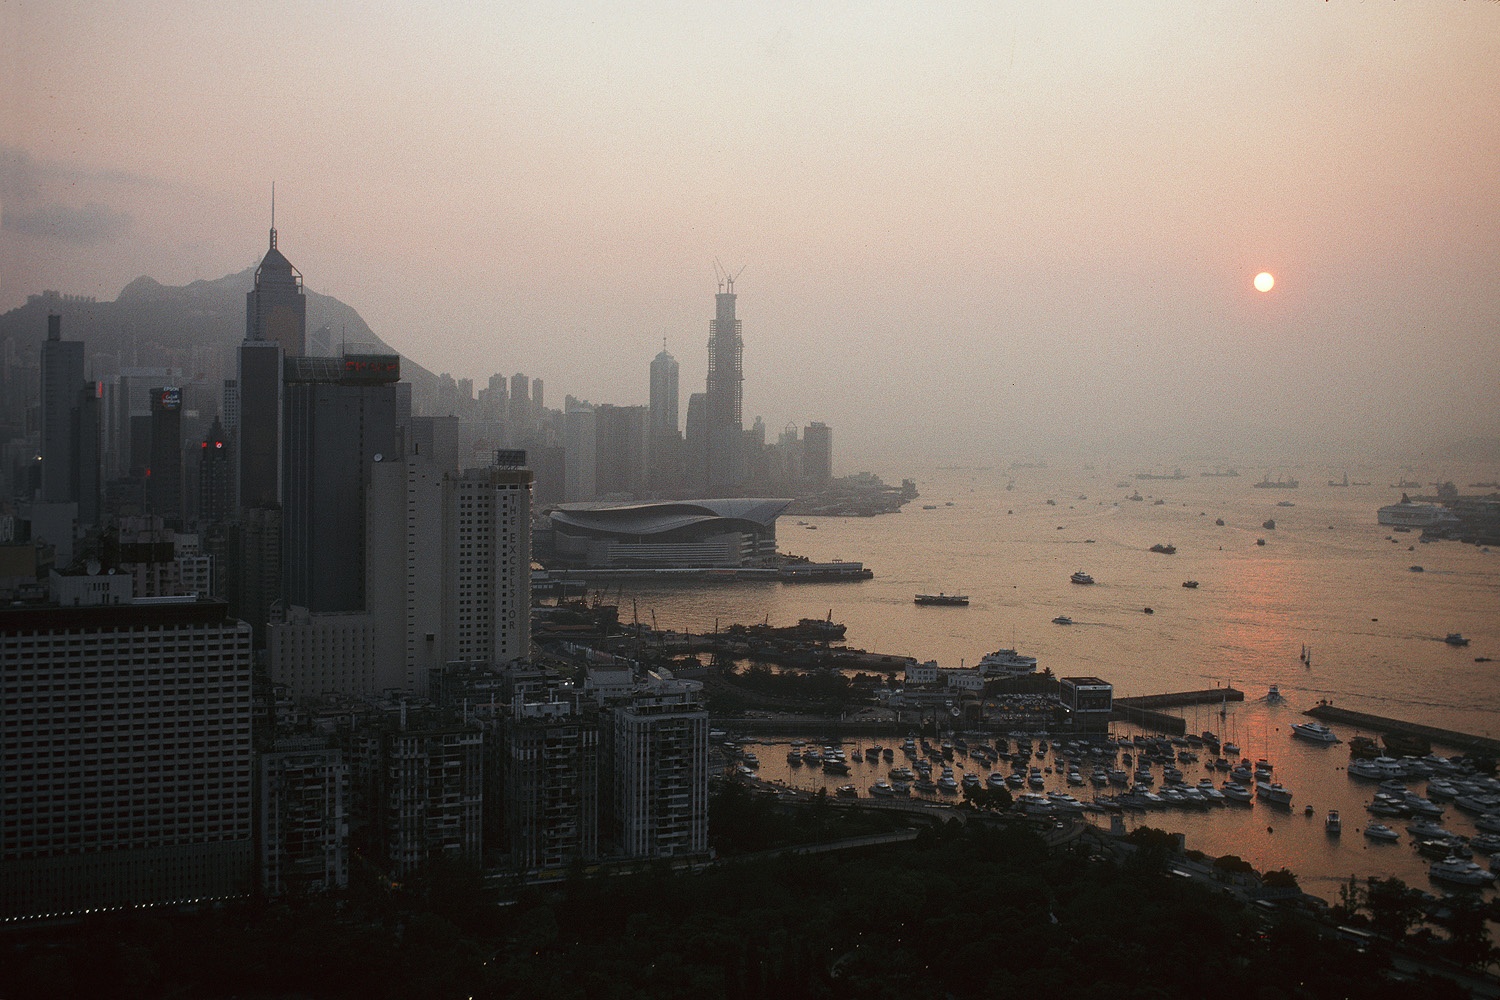 bill-hocker-harbor-smog-causeway-bay-hong-kong-2002